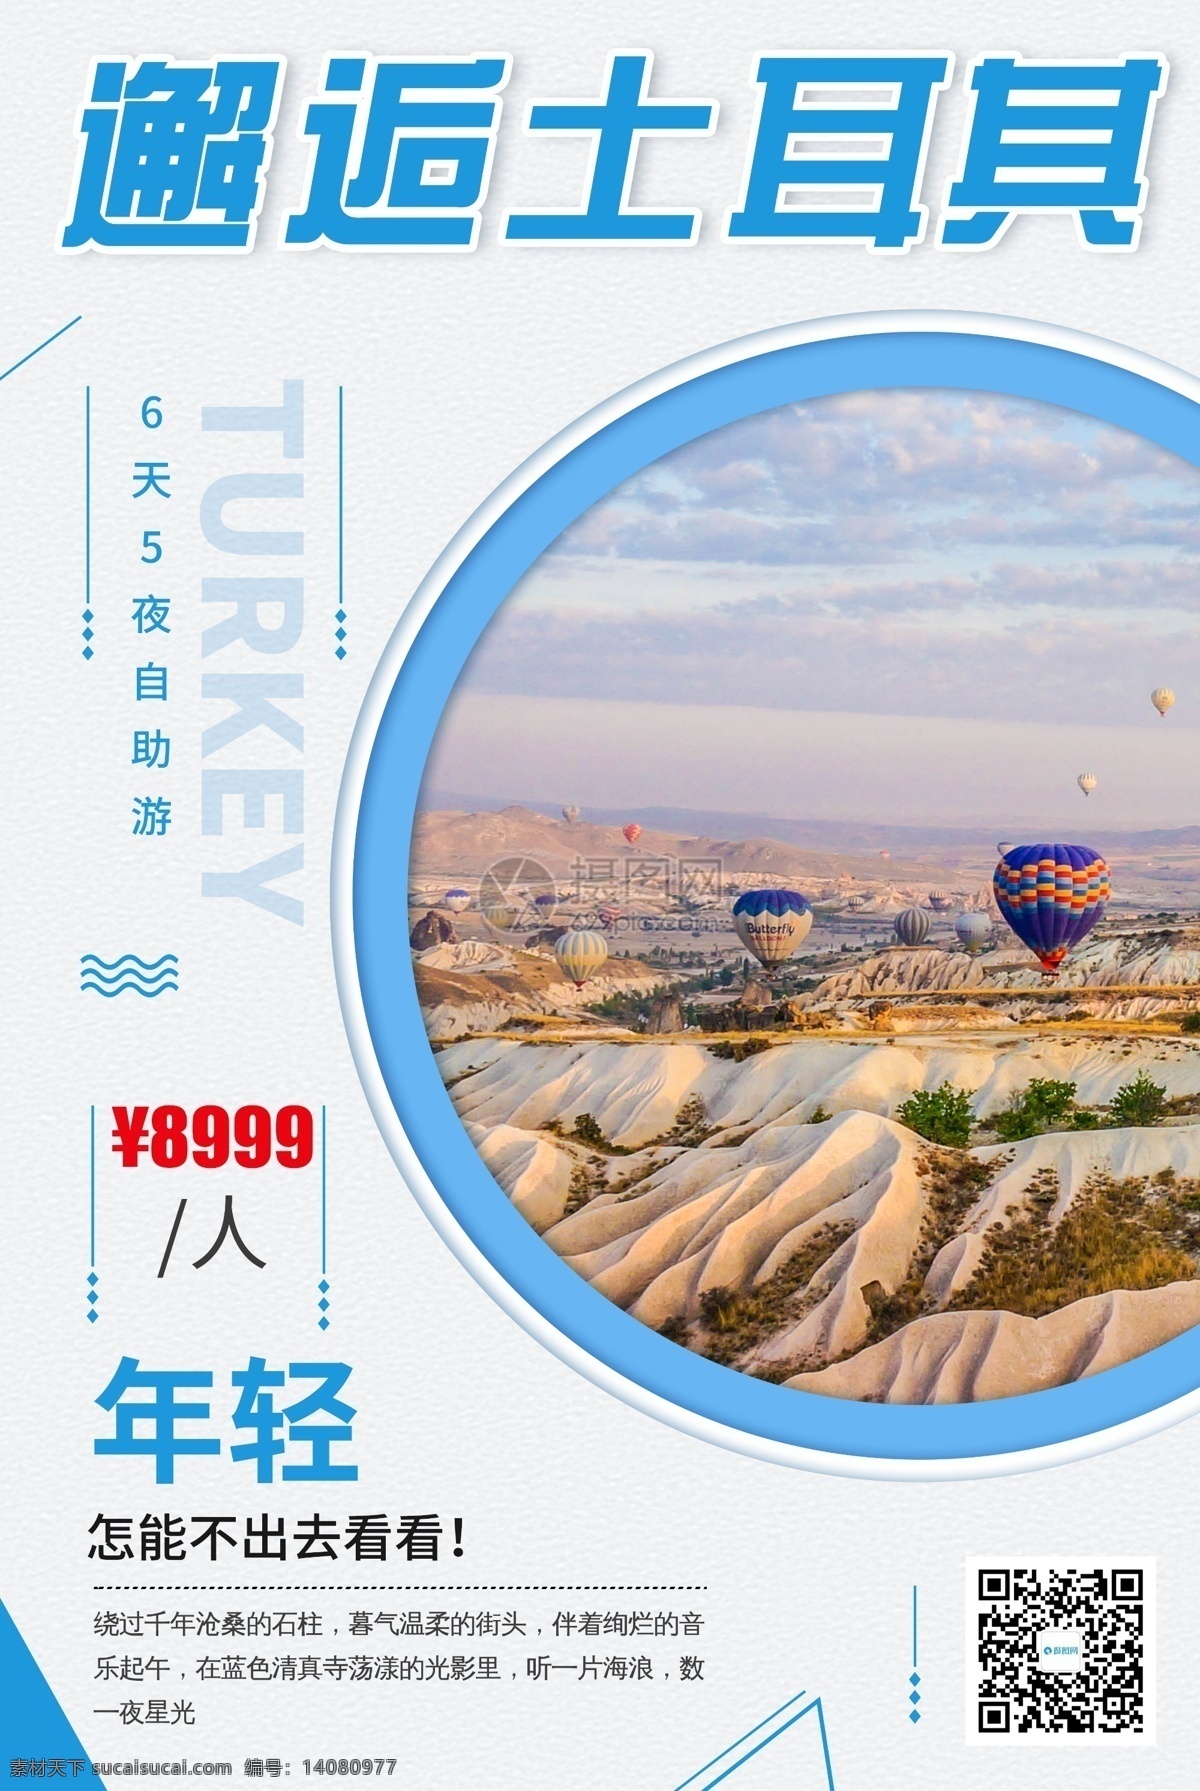 土耳其 旅游 海报 出游 热气球 旅游海报 旅行 旅途 著名景点 景区 国内游 国外游 出境游 海岛游 旅行社 旅行团 跟团游 毕业旅行